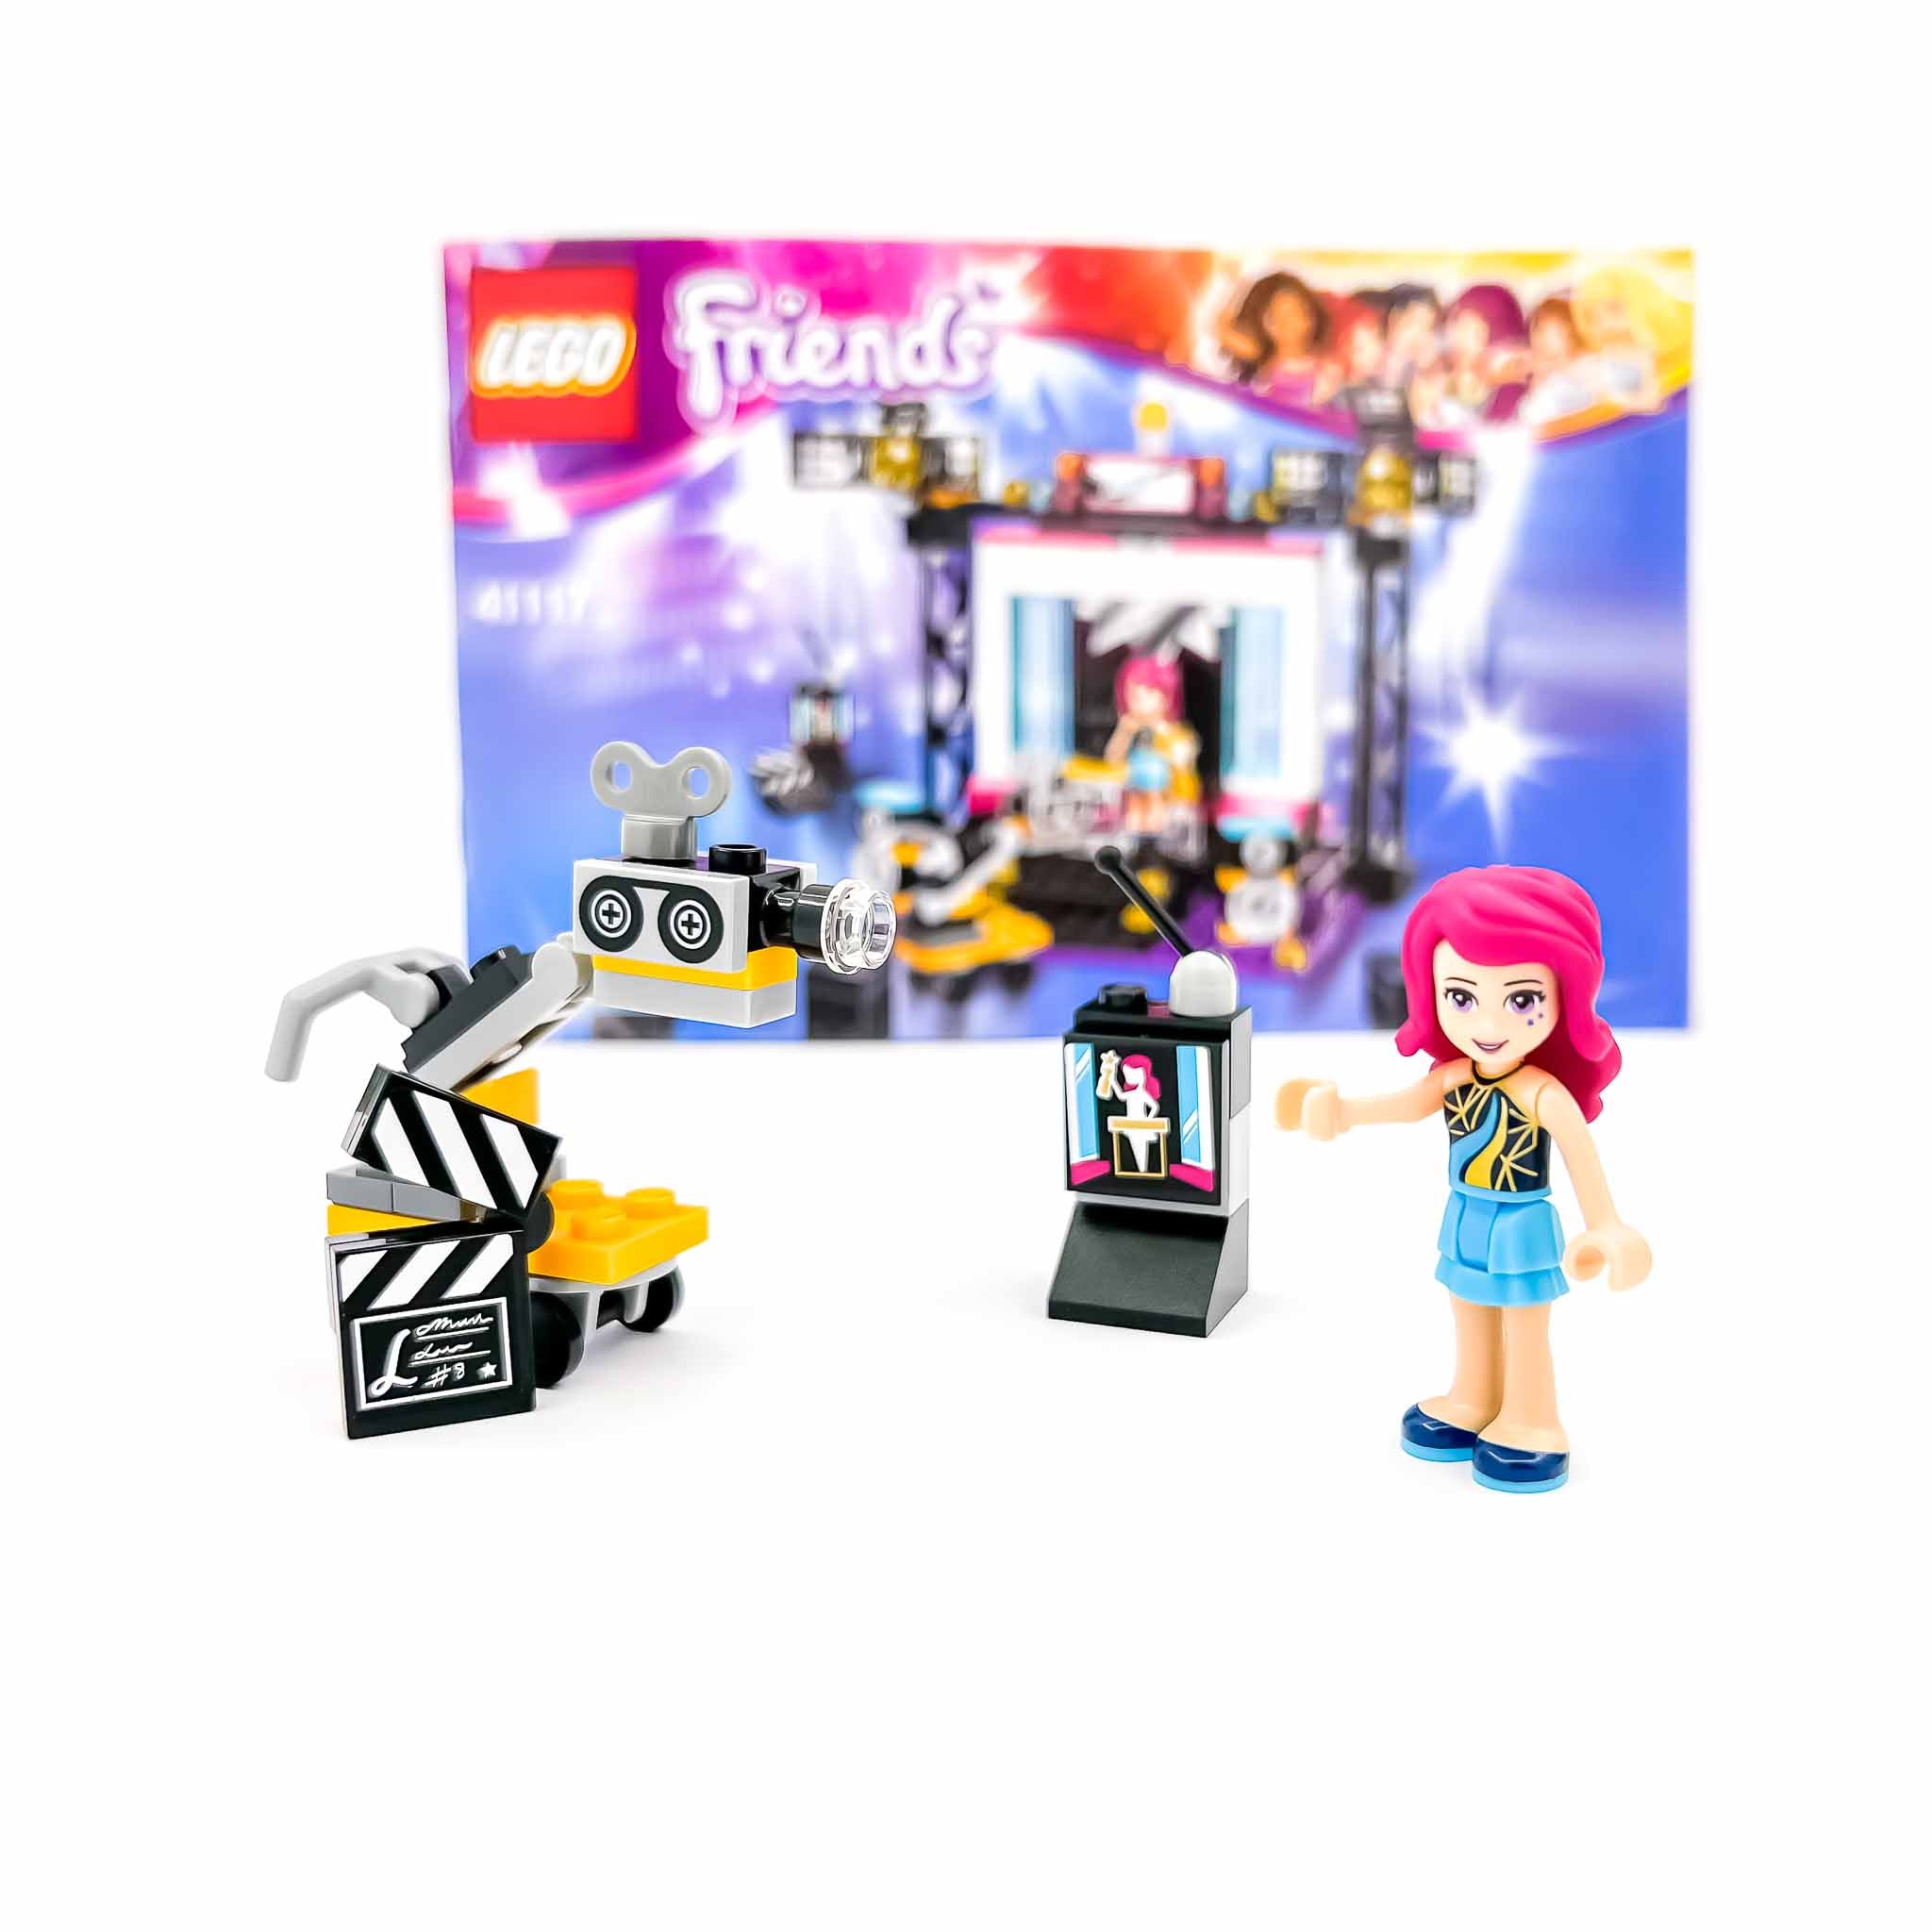 Lego 41117 Le plateau TV pop rock - Lego